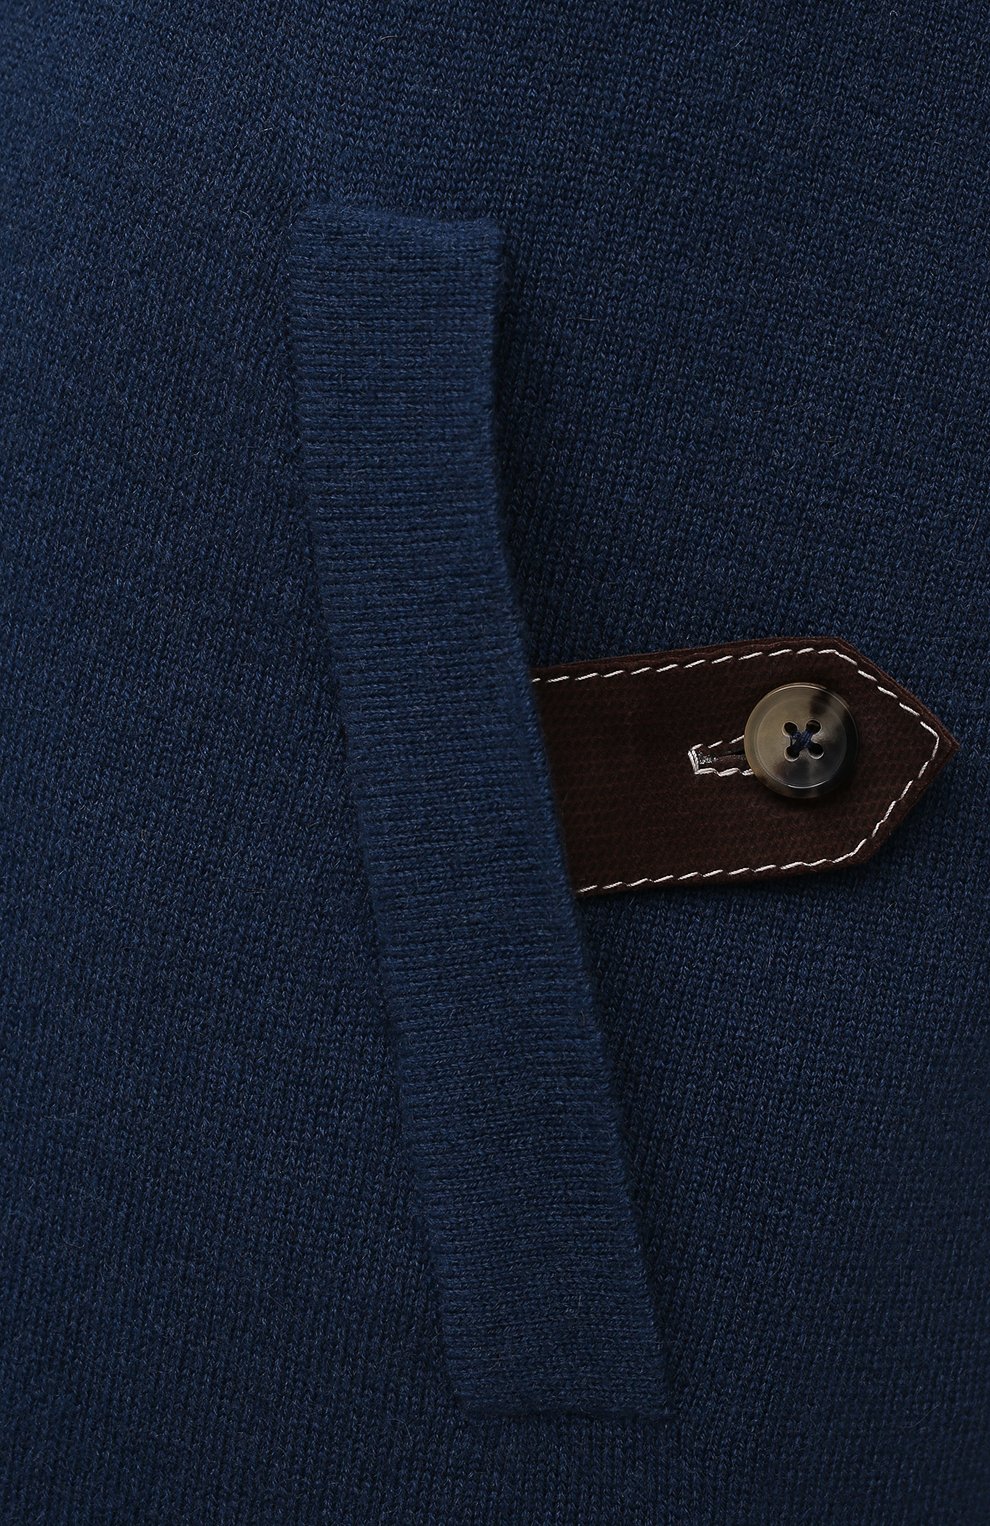 Мужской кашемировый бомбер с меховой подкладкой SVEVO синего цвета, арт. 0140SA21/MP01/2 | Фото 5 (Кросс-КТ: Куртка; Мужское Кросс-КТ: шерсть и кашемир, утепленные куртки; Материал внешний: Шерсть, Кашемир; Рукава: Длинные; Принт: Без принта; Длина (верхняя одежда): Короткие; Стили: Кэжуэл)